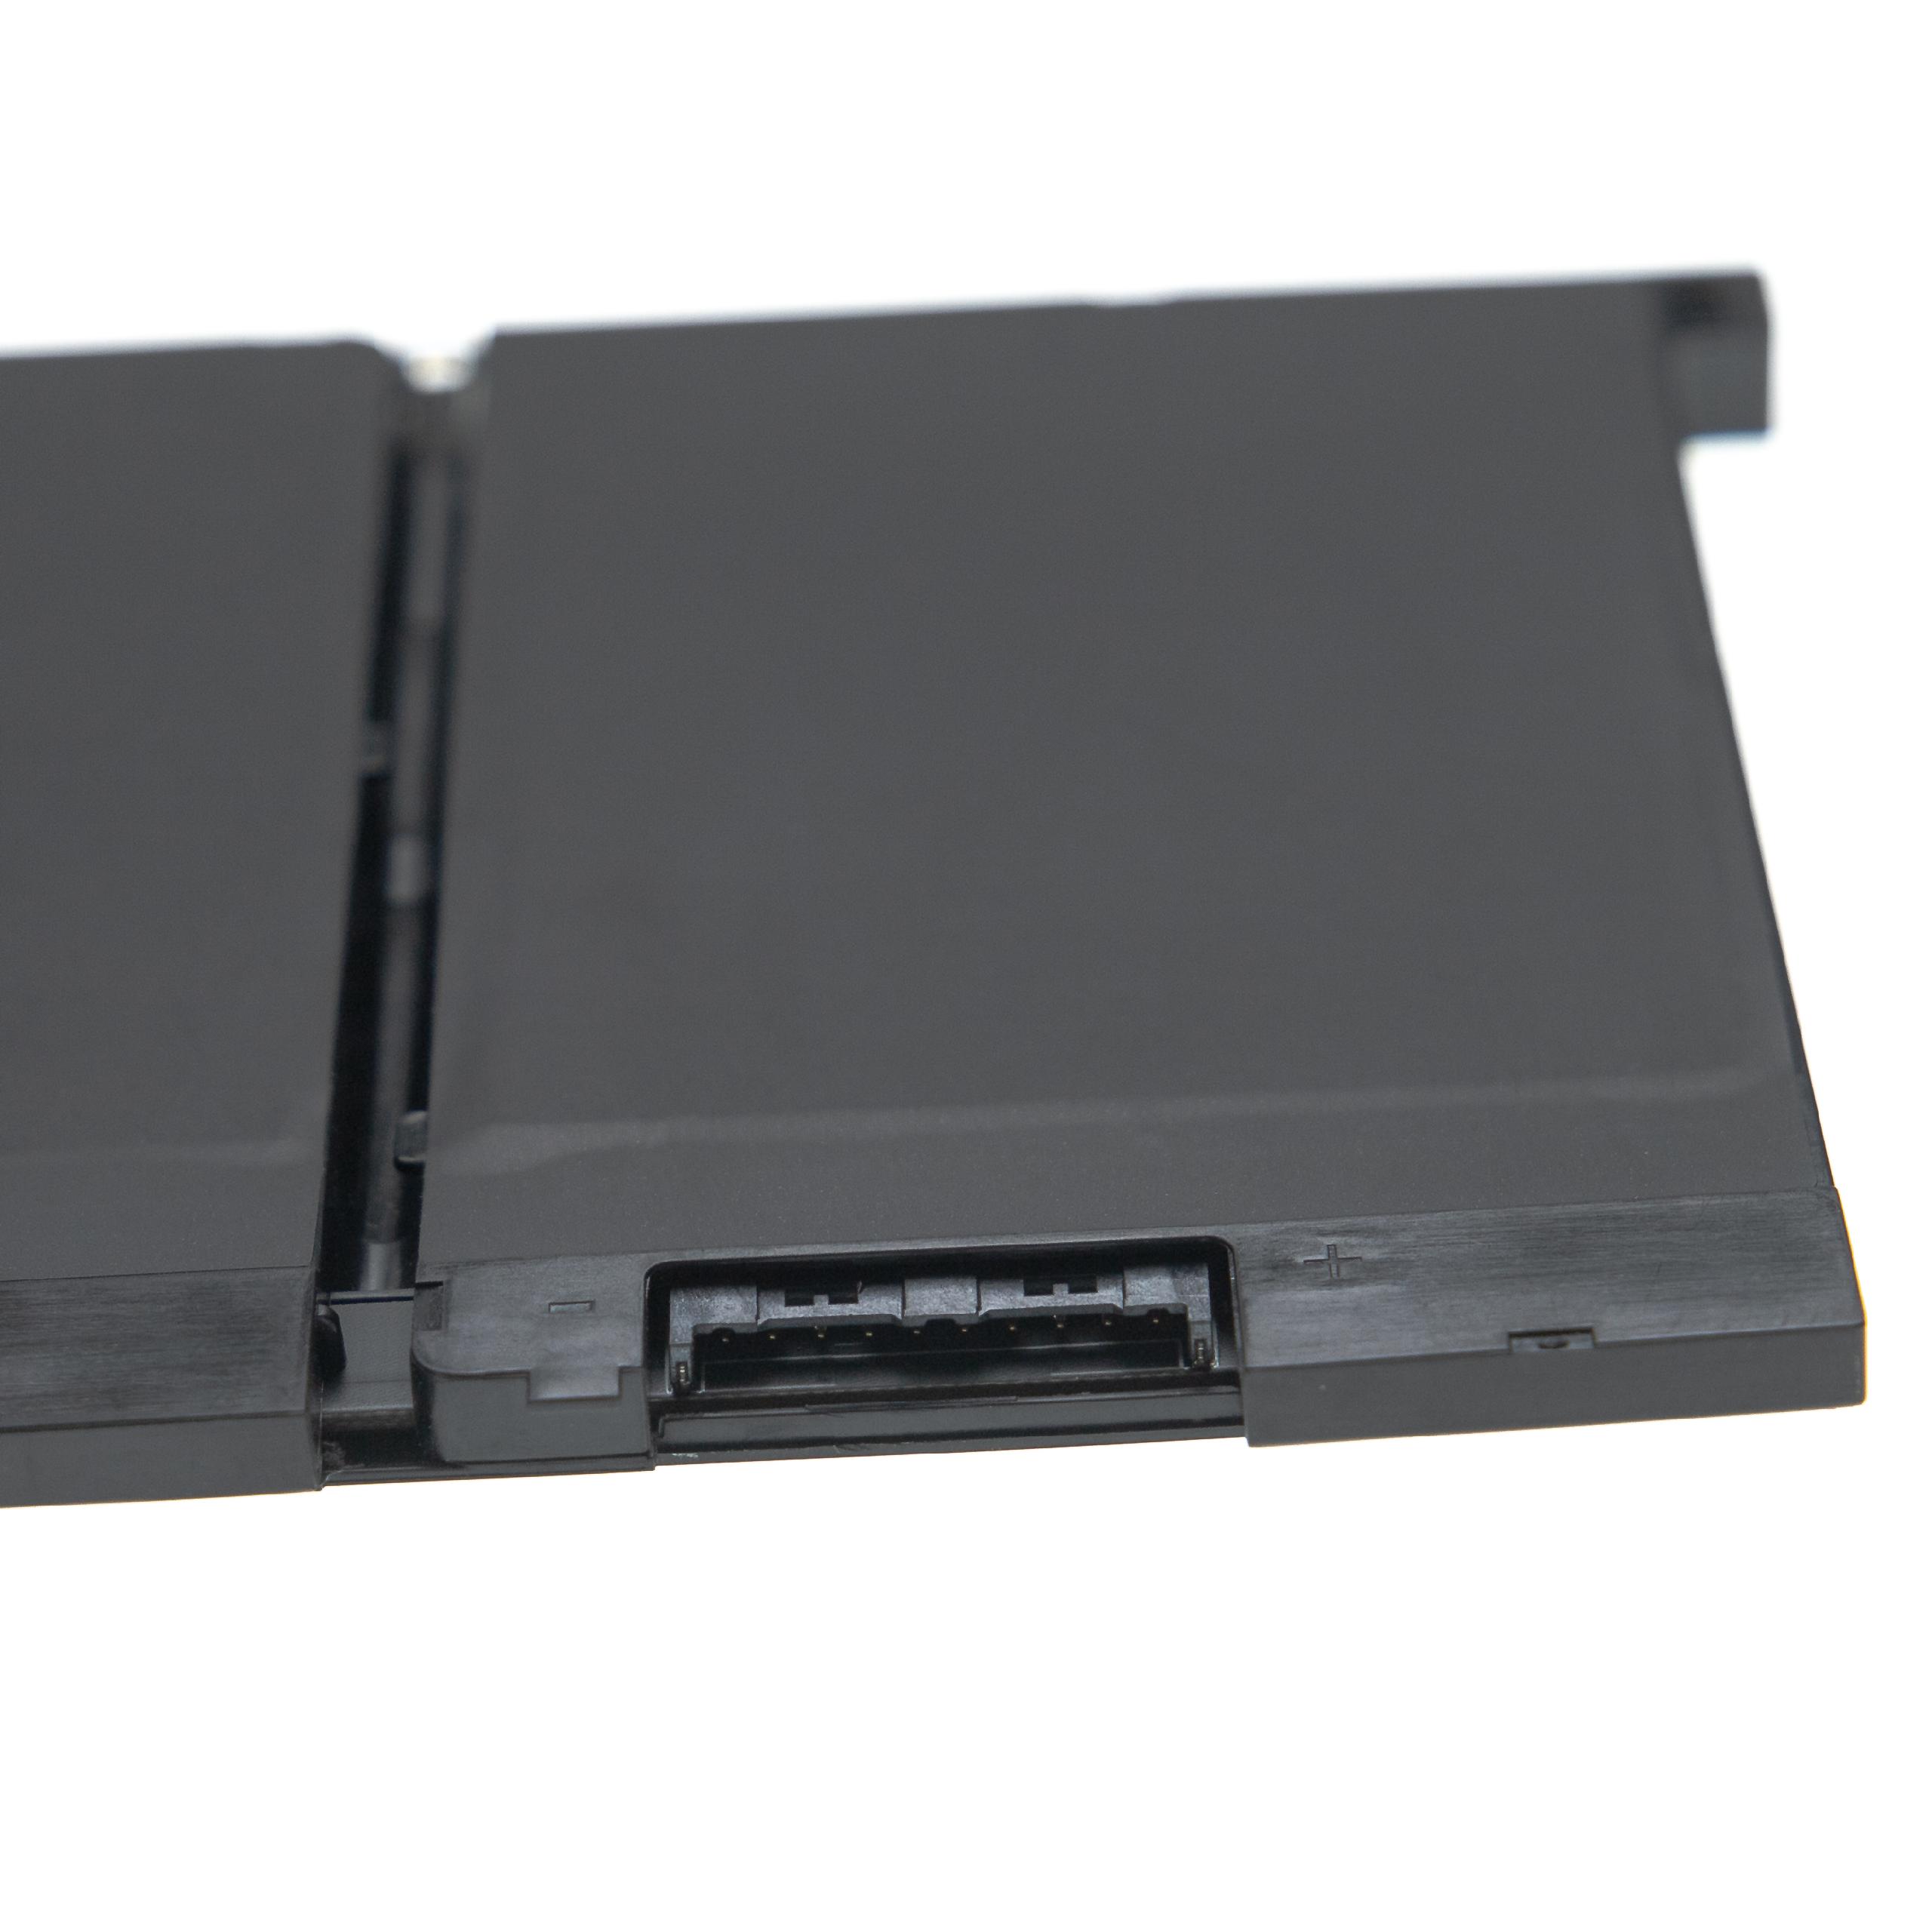 Akumulator do laptopa zamiennik Dell 83XPC, 0DJWGP, 3DDDG, 00JWGP, 93FTF, 4yfvg - 4200 mAh 11,4 V Li-Ion